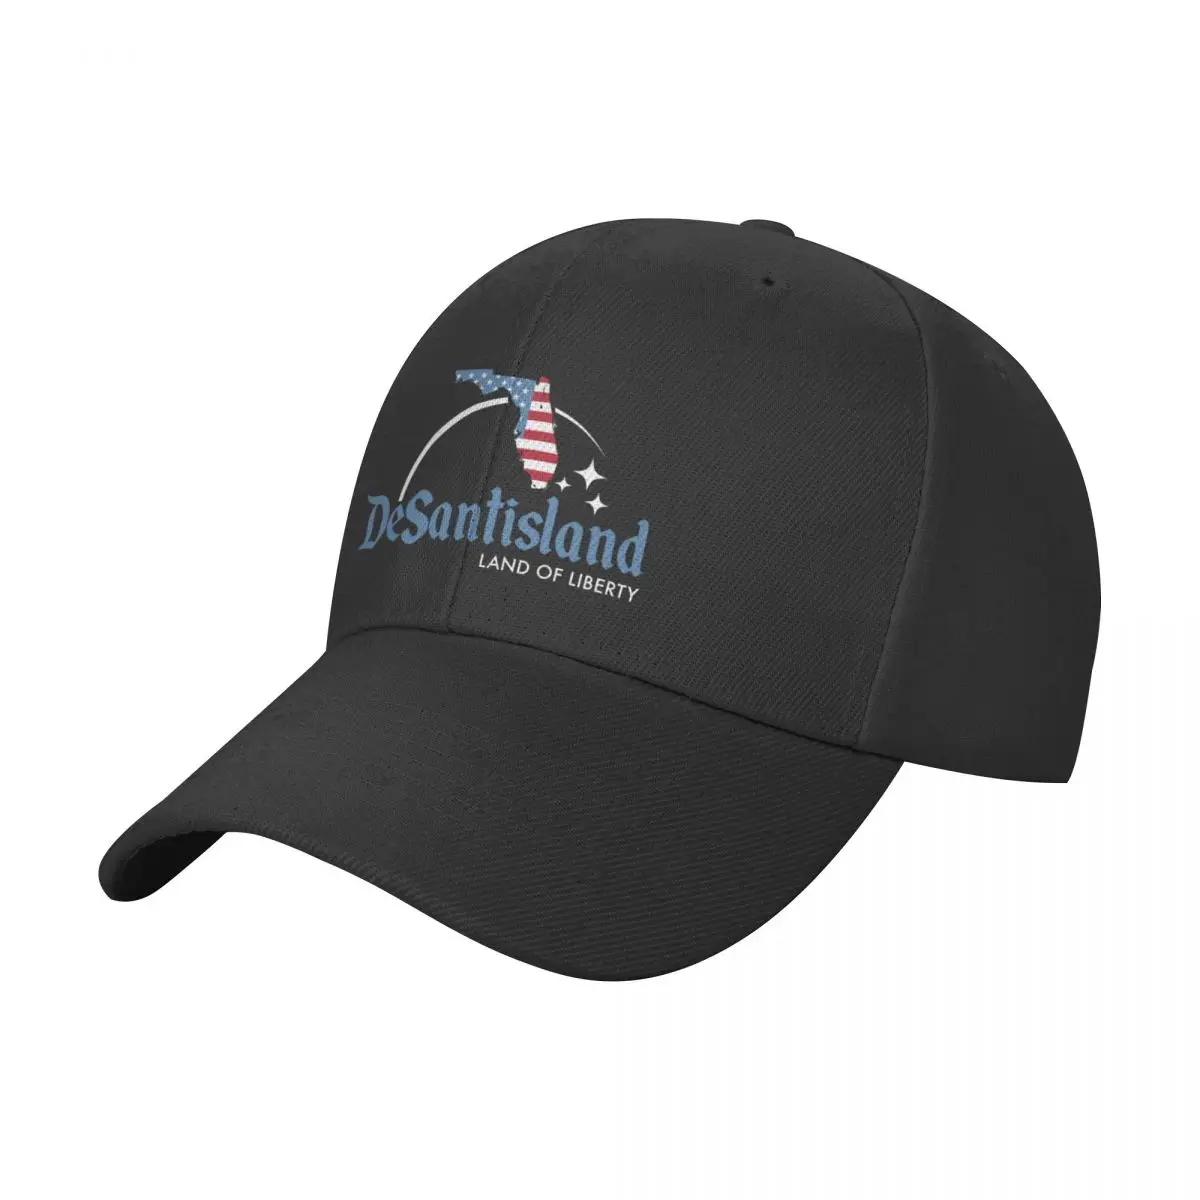 Бейсбольная кепка DeSantisland Land of Liberty, Солнцезащитная кепка для детей, Пляжная шляпа с диким мячом, Аниме, Женская шляпа, Мужская шляпа